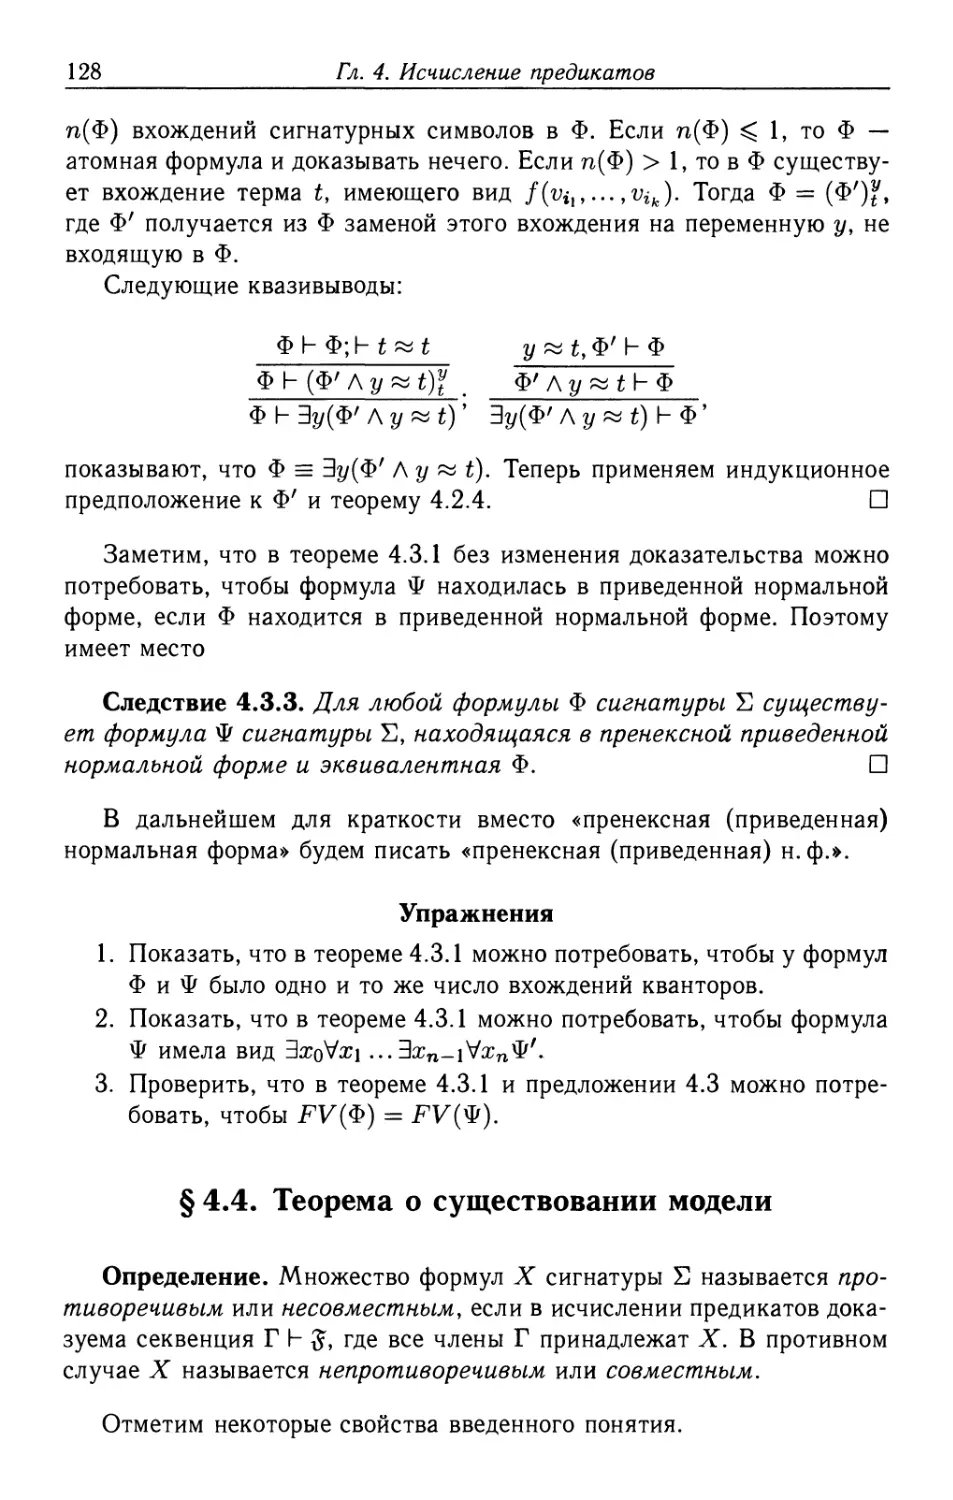 §4.4. Теорема о существовании модели